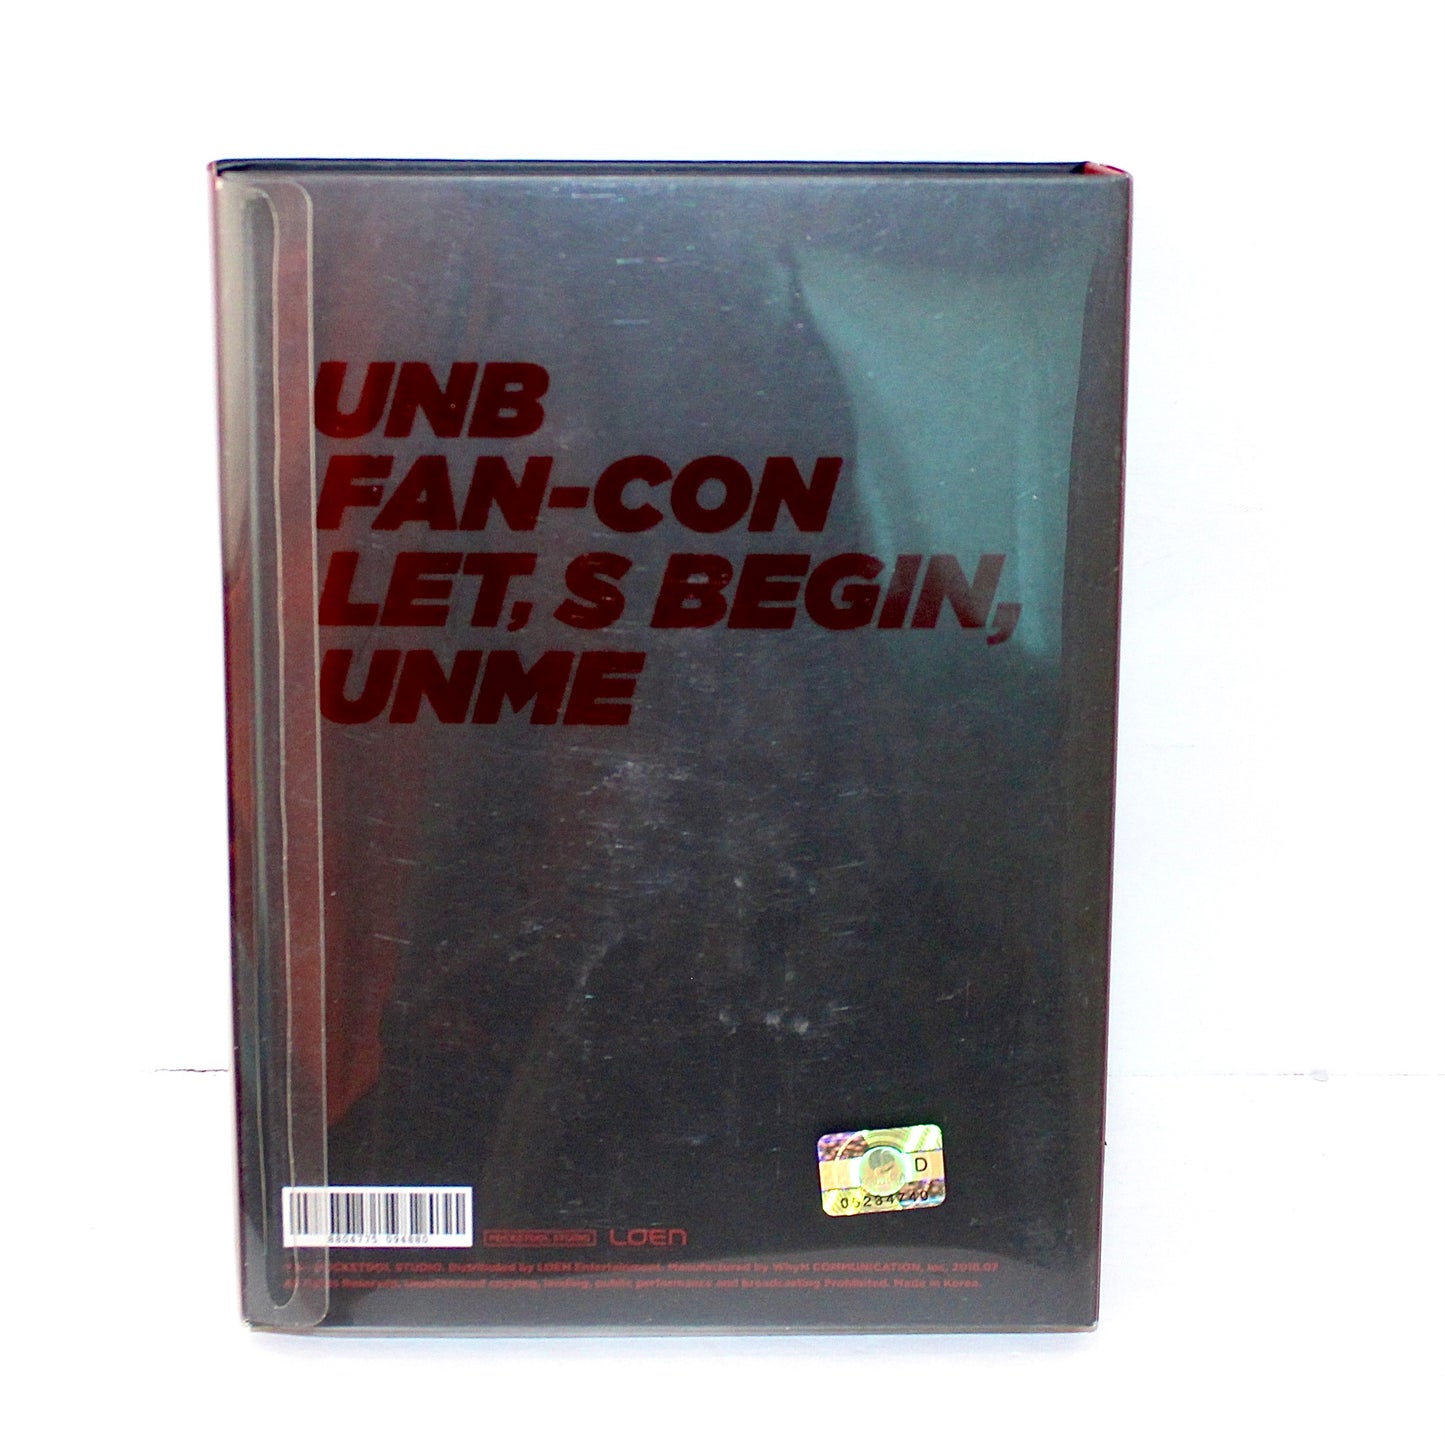 UNB Fan-Con: Let's Begin, UNME | DVD